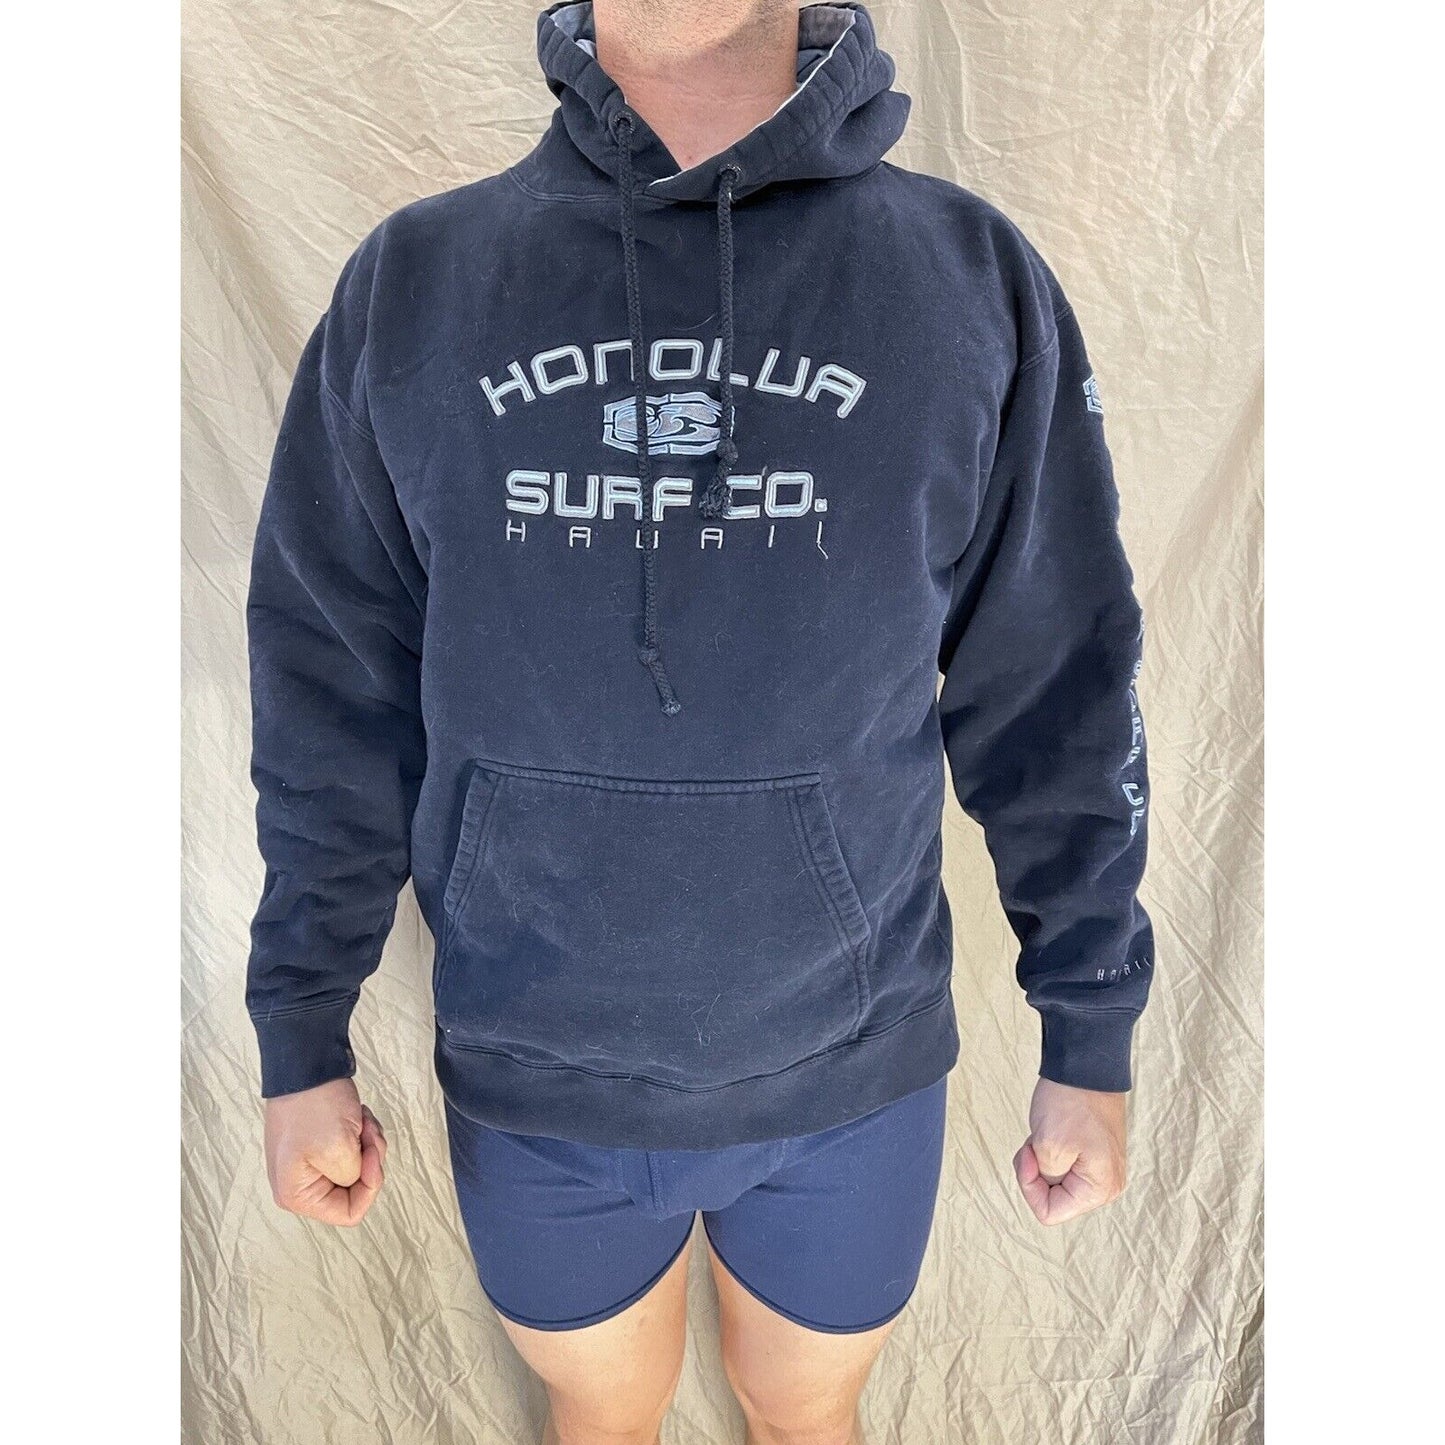 men's black large honolua surf co hoodie pullover hawaii